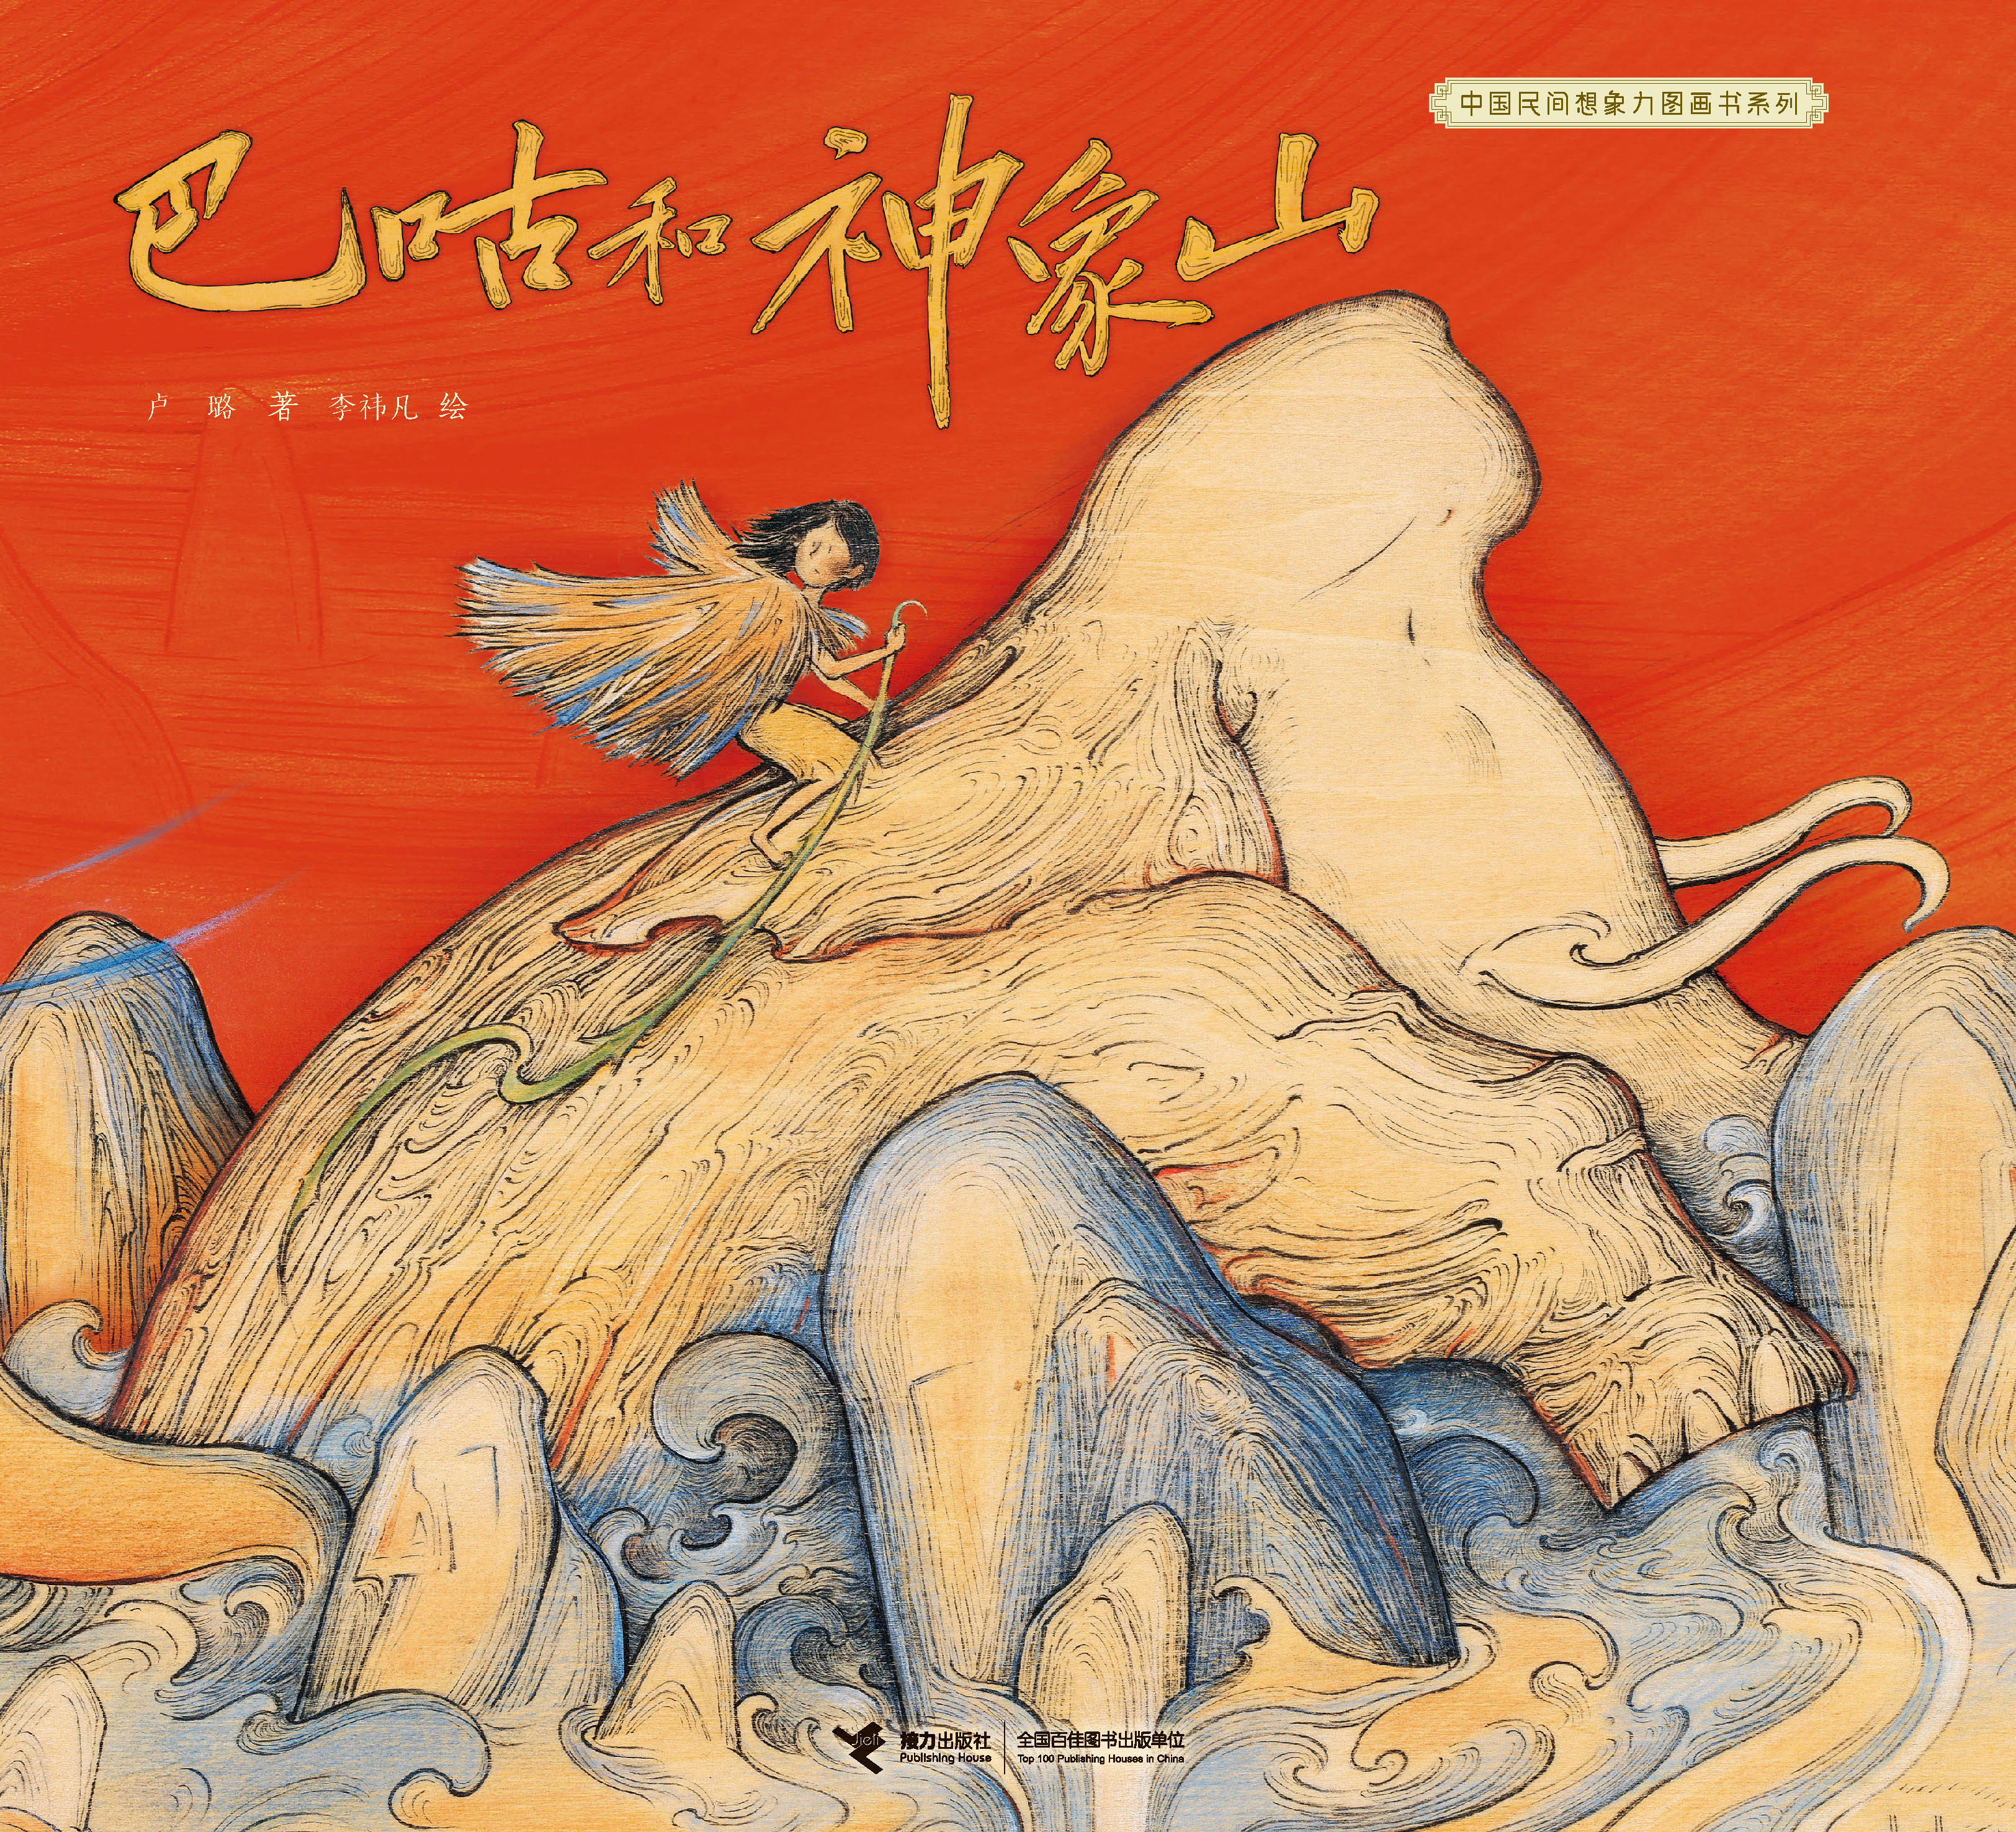 中国民间想象力图画书系列:巴咕和神象山